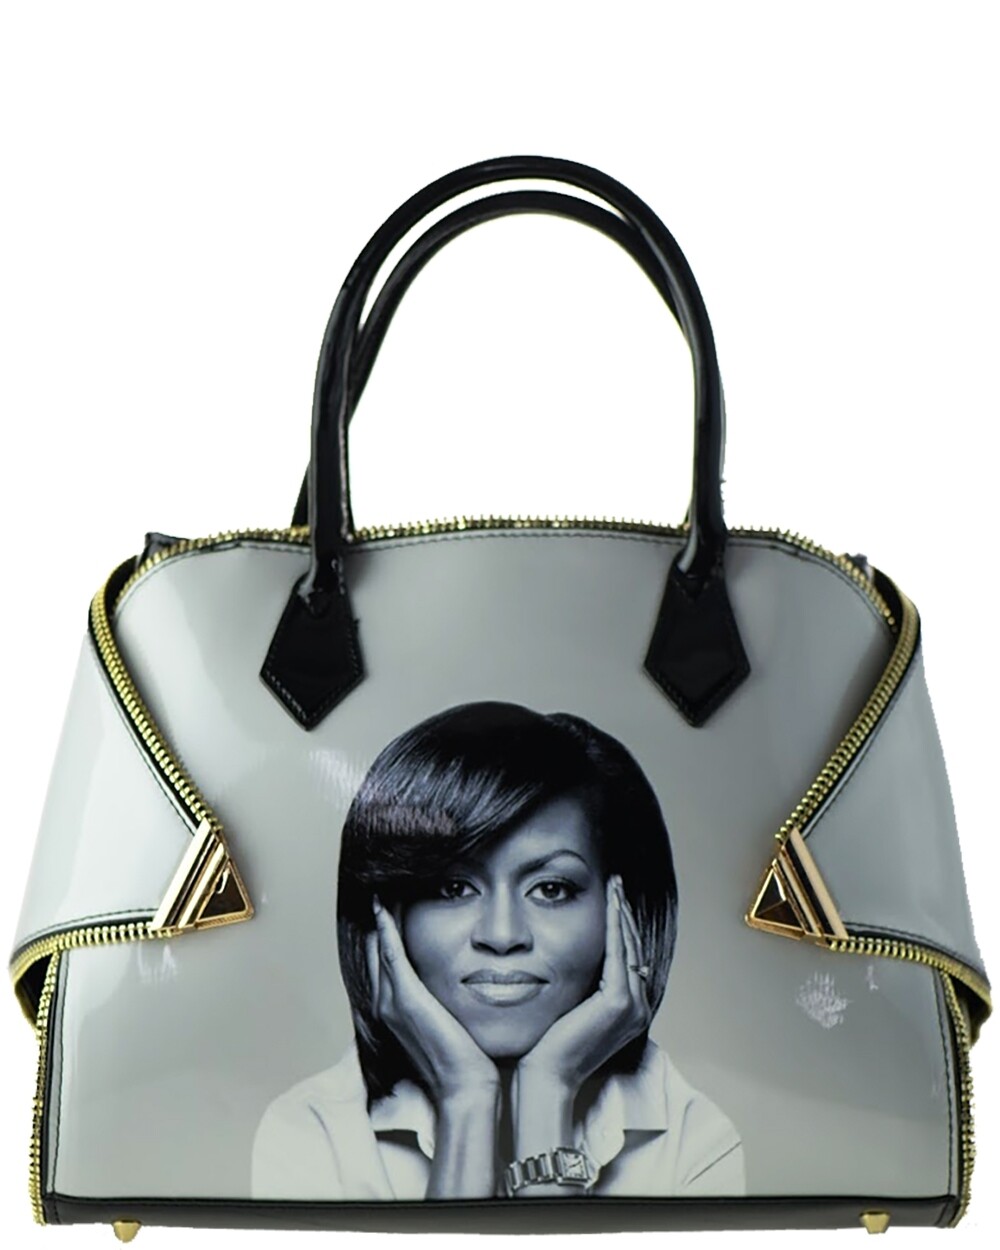 Obama | Zipper Michelle Obama Fashion bag